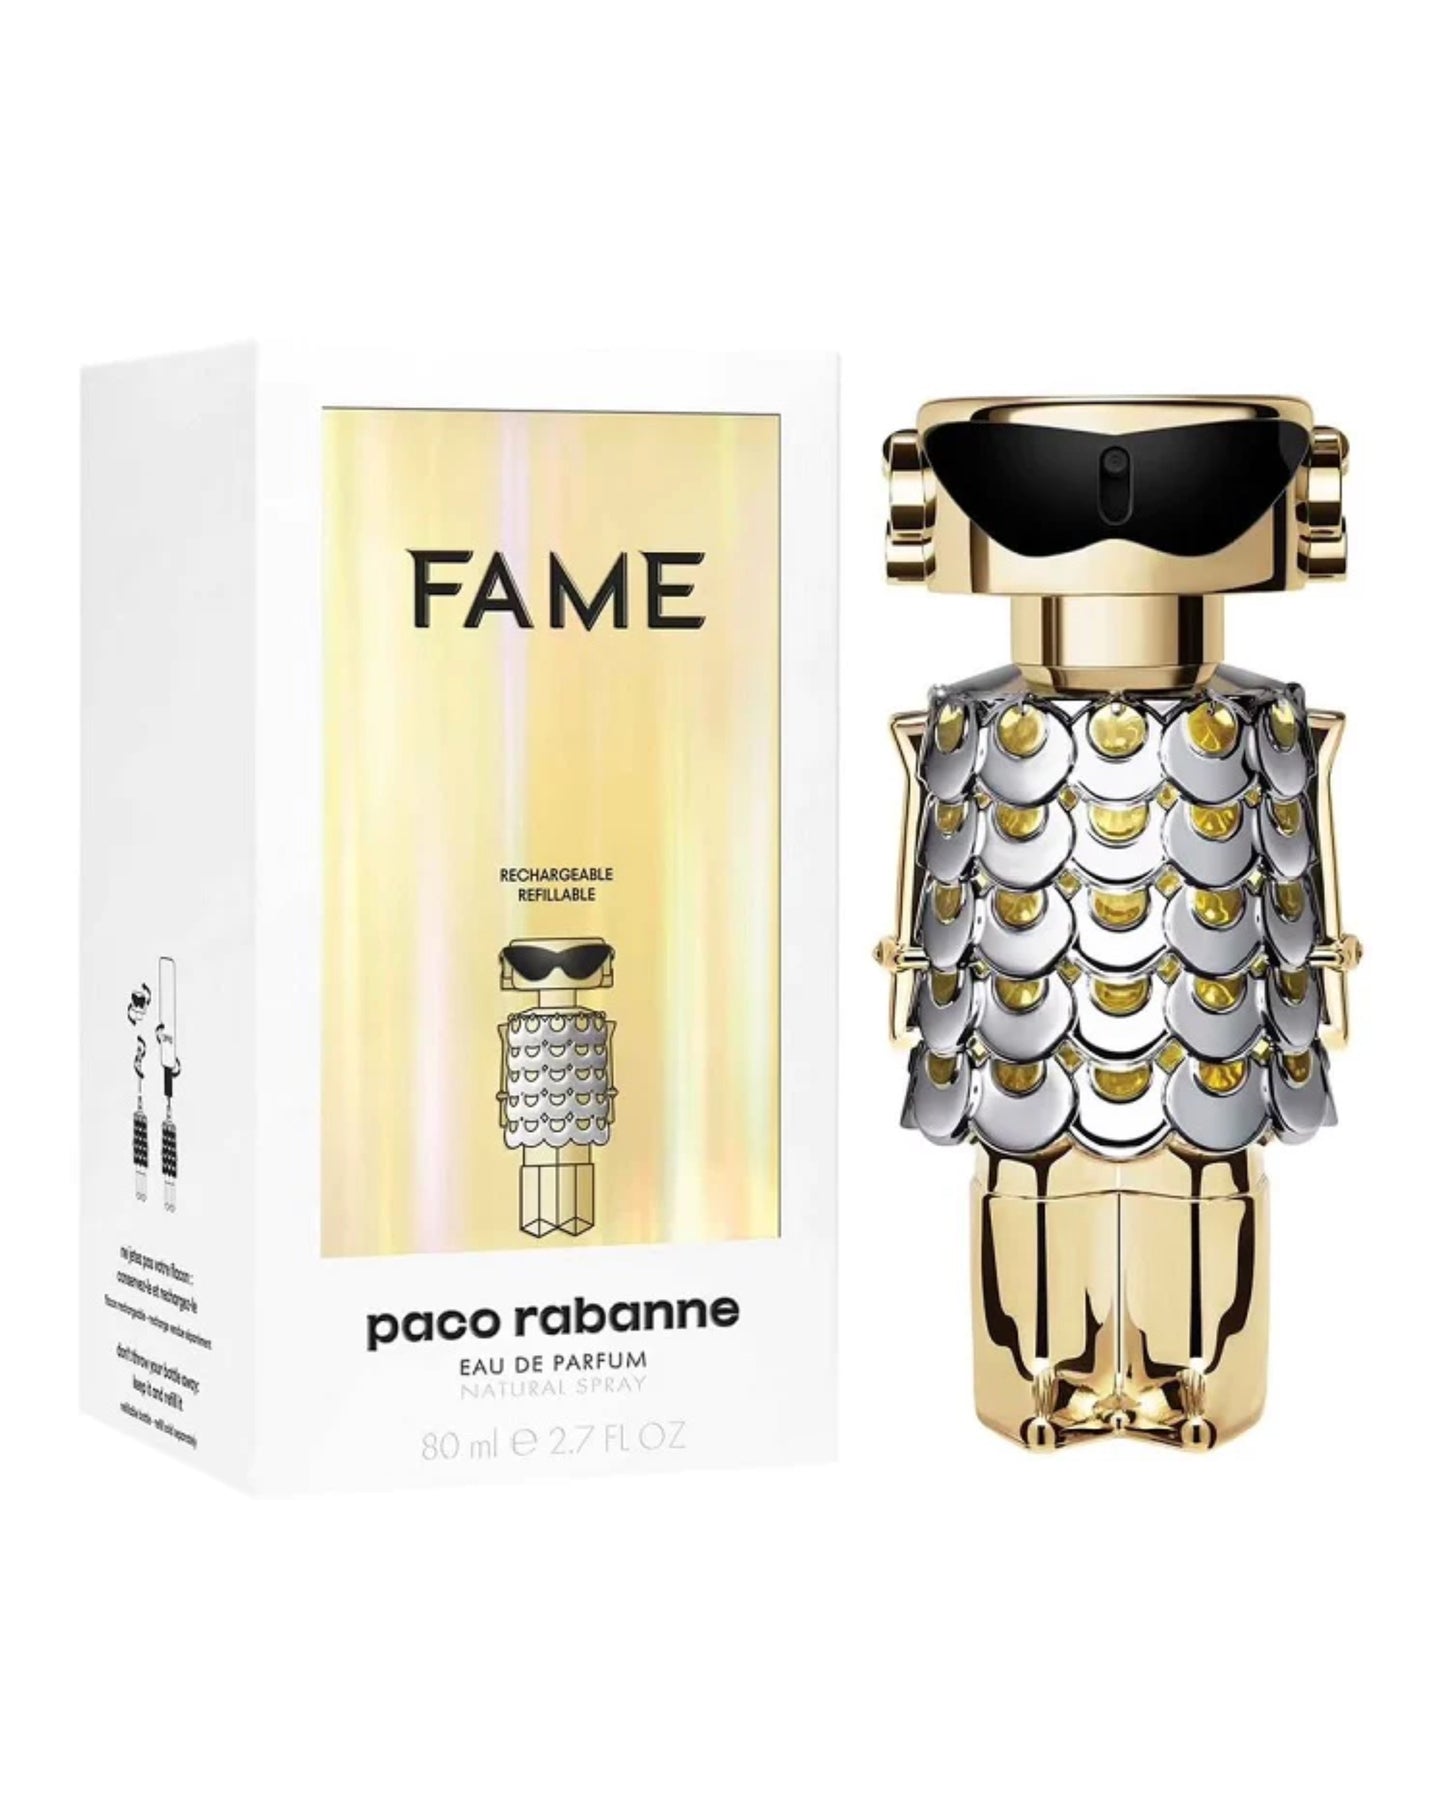 PACO RABANNE - FAME Eau de Parfum-foryou-vente de parfum original au Maroc-parfum original Maroc-prix maroc-foryou parfum original-authentique-parfum authentique-prix maroc-original-original perfum-perfume-eau de parfum